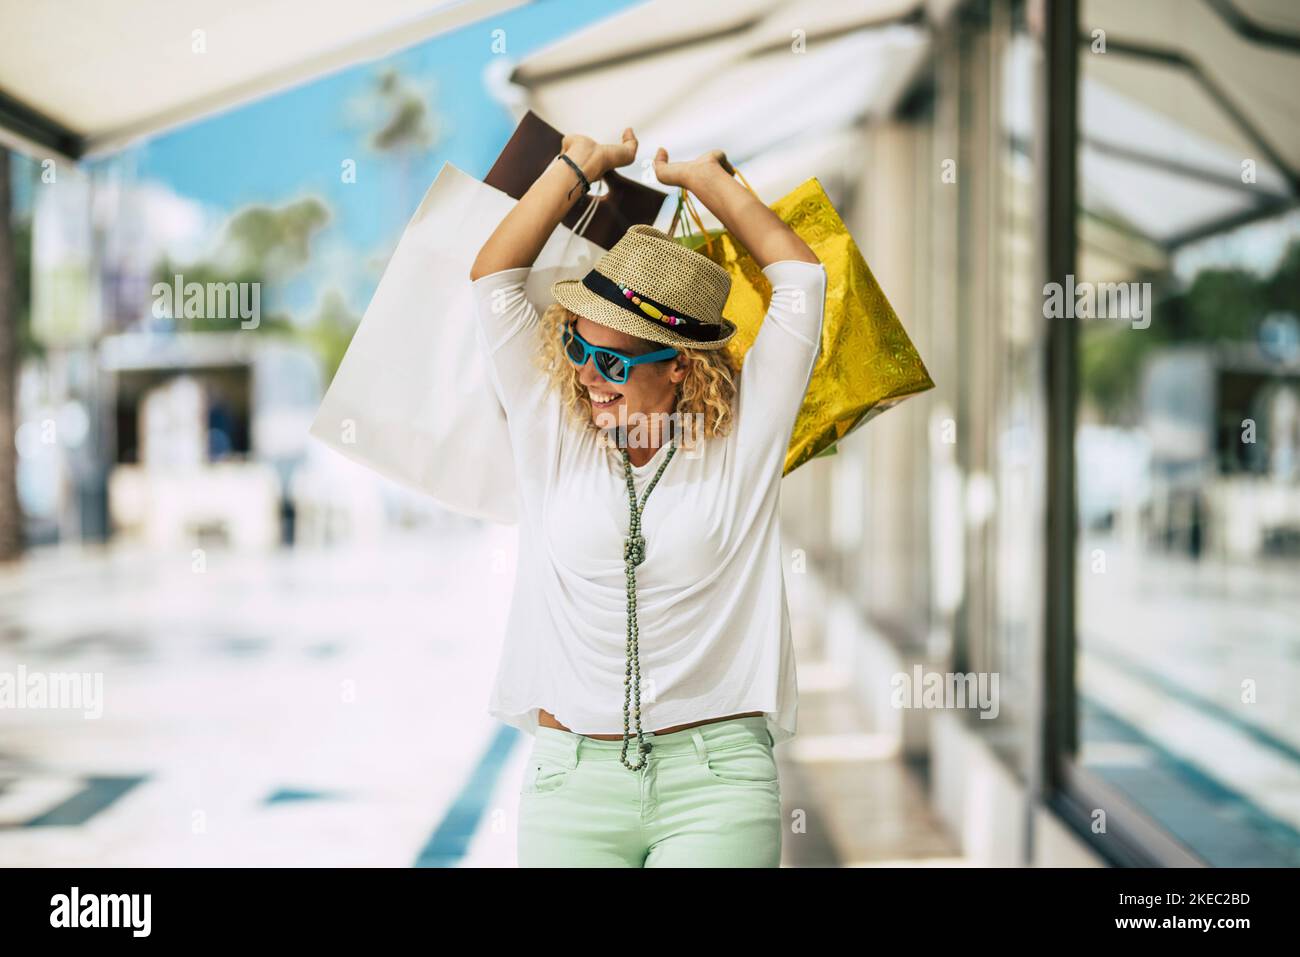 Eine junge und schöne Frau, die Geschenke und Kleidung kauft und im Einkaufszentrum im Freien einkaufen geht Stockfoto